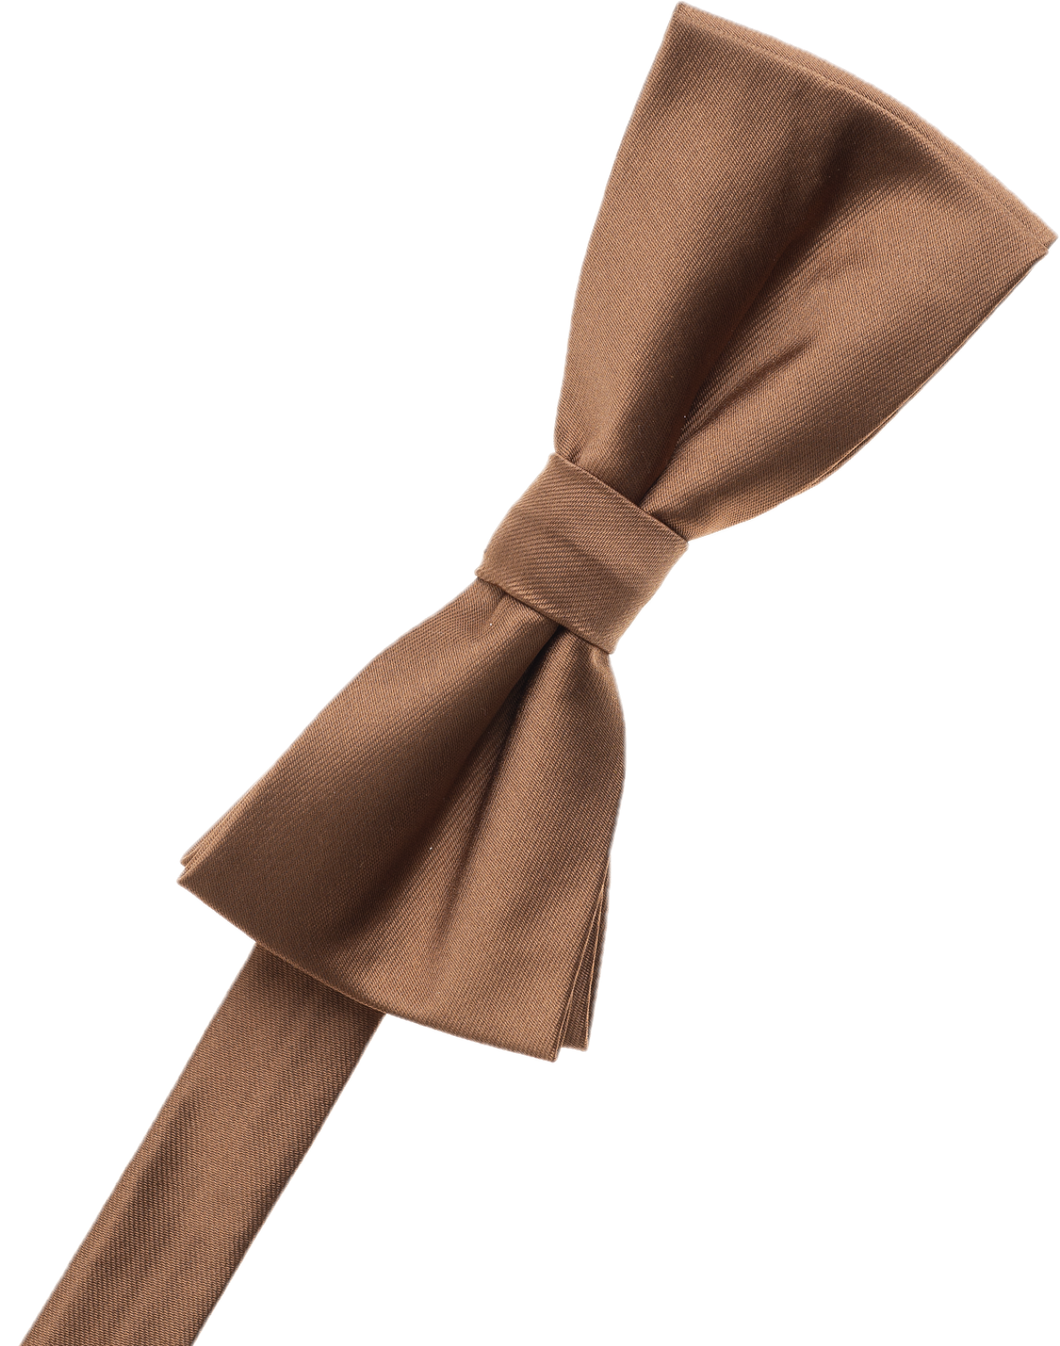 Kangaroo Bow Tie